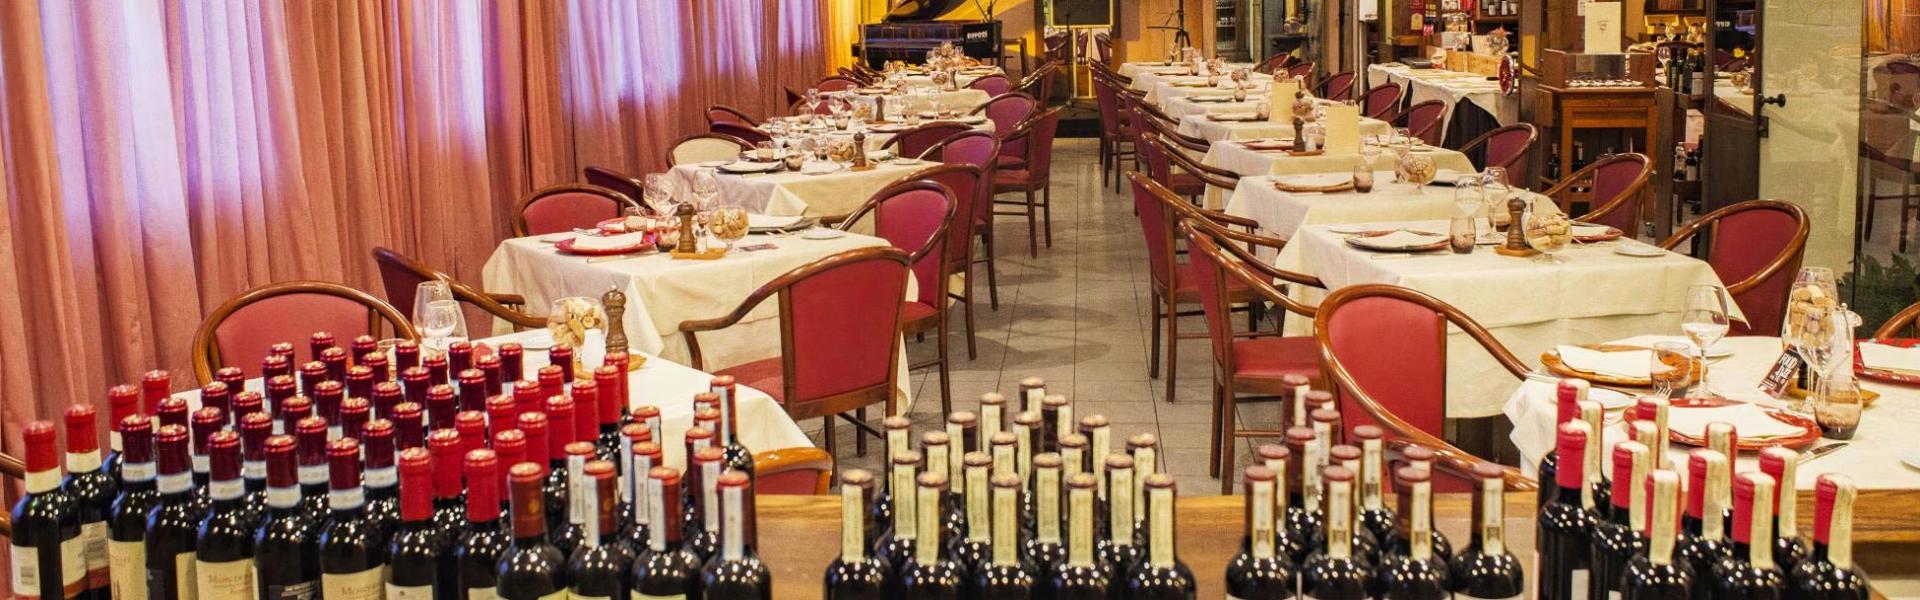 hotelgio en restaurant-wine-shop-gio-perugia 011